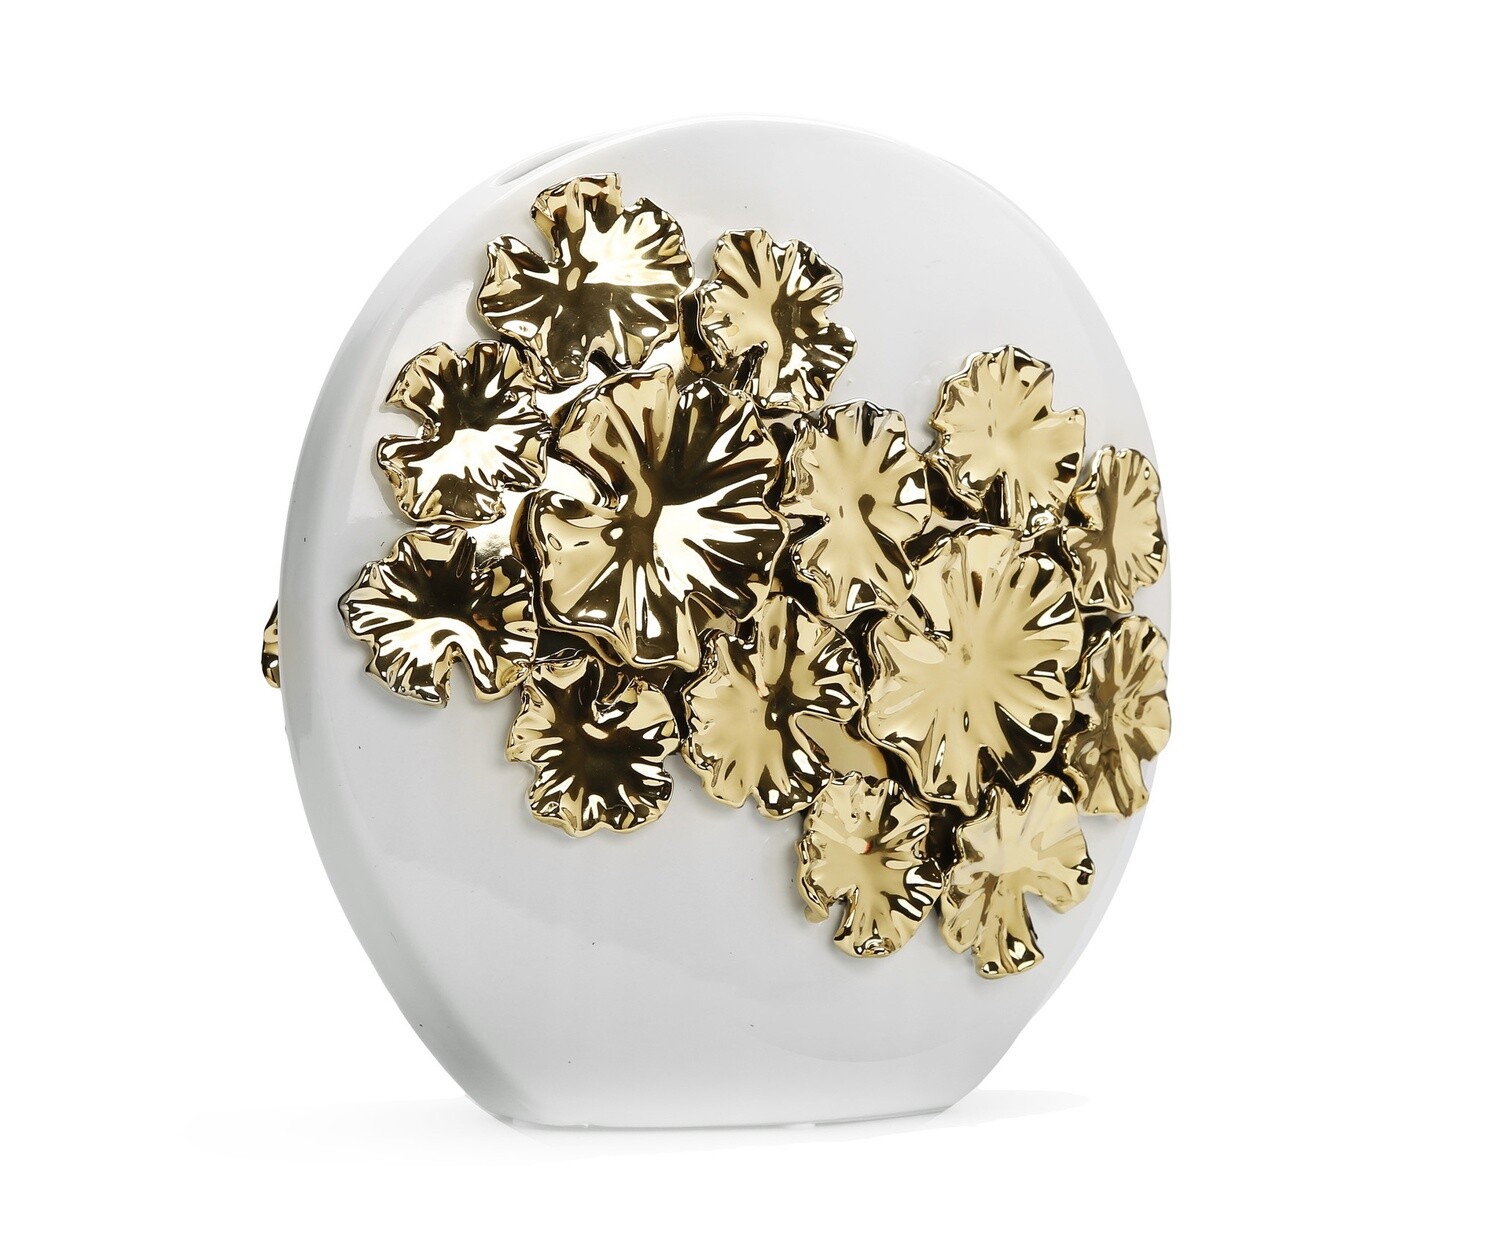 12" White Round Vase With Gold Flower Design